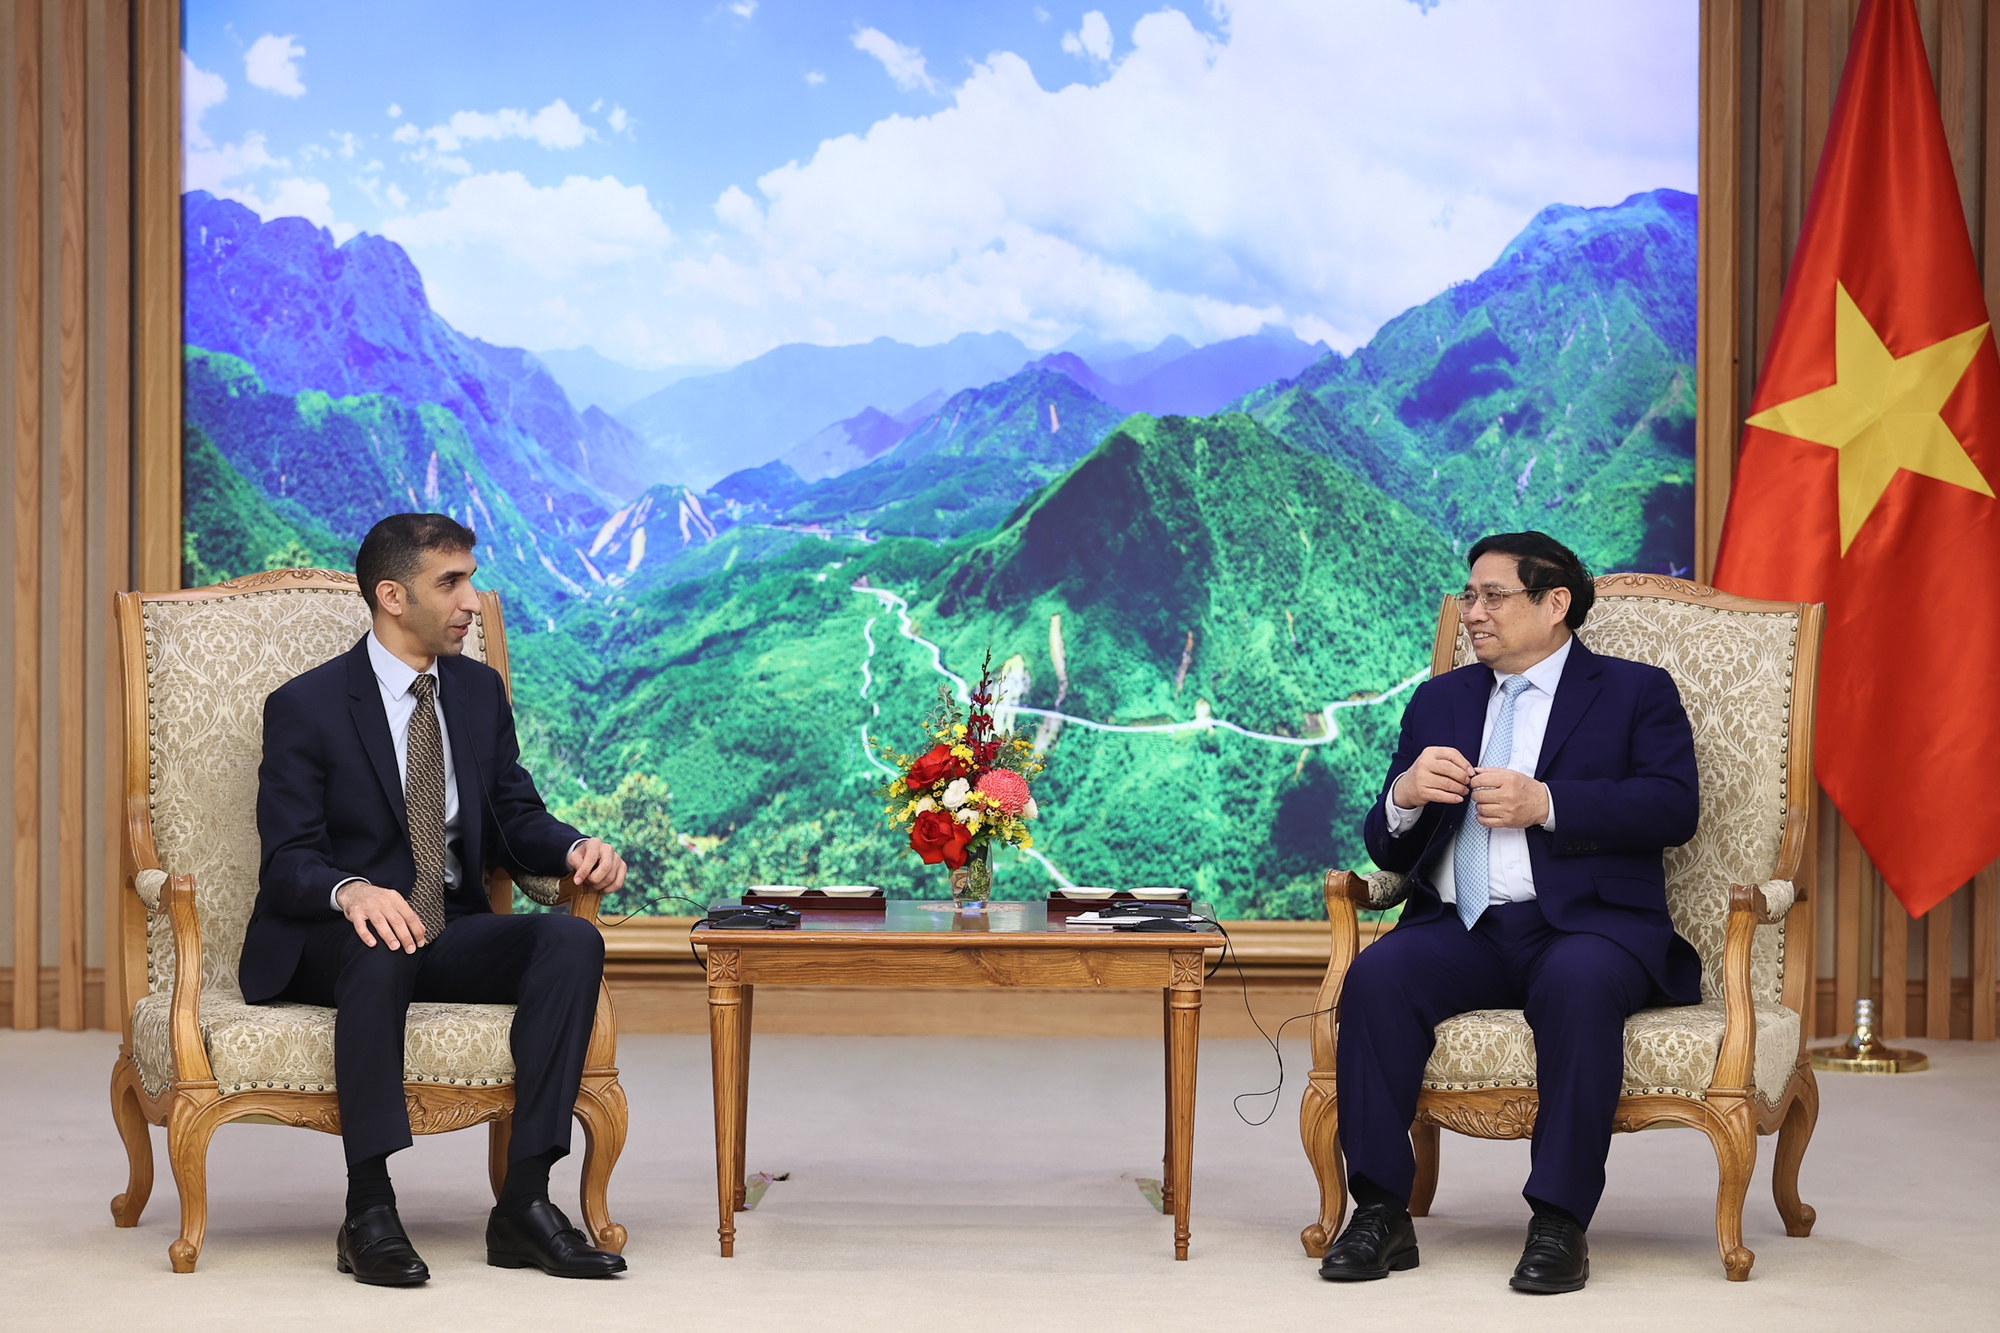 Thủ tướng Phạm Minh Chính và Quốc vụ khanh Thani bin Ahmed Al Zeyoudi vui mừng nhận thấy quan hệ hữu nghị và hợp tác kinh tế tốt đẹp giữa hai nước thời gian qua đã có những bước phát triển tích cực trên nhiều lĩnh vực - Ảnh: VGP/Nhật Bắc